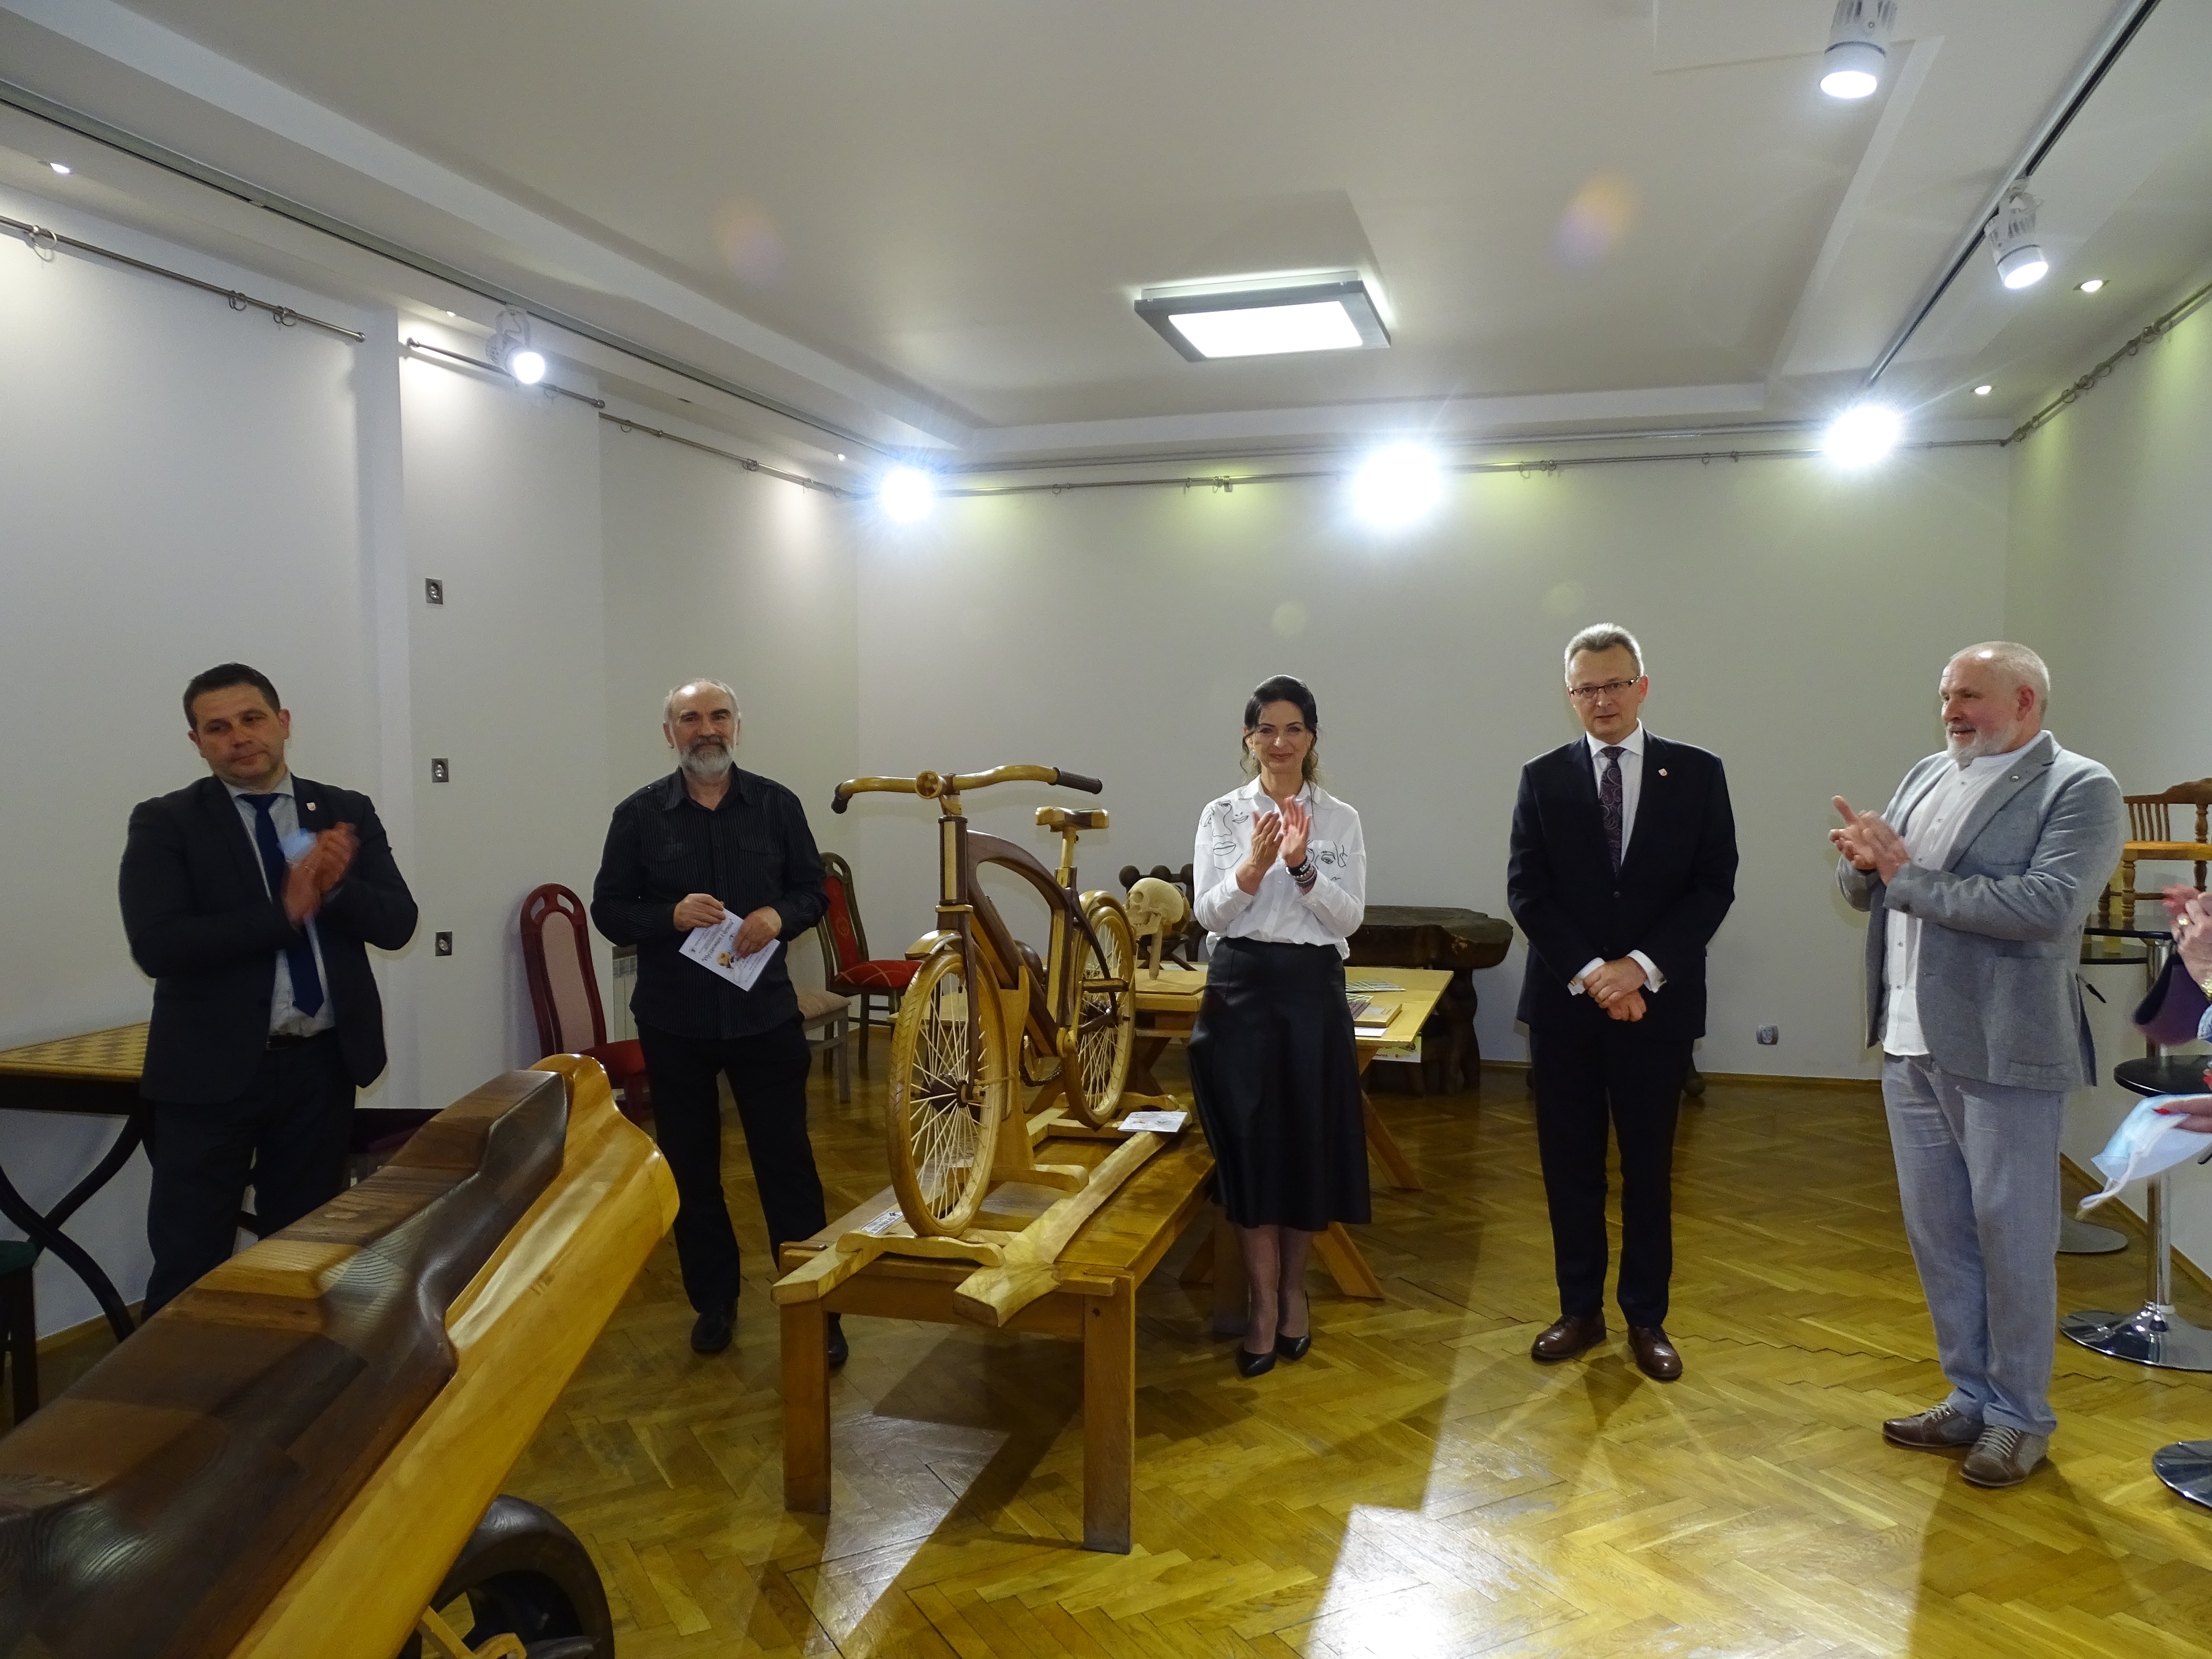 burmistrz Zwolenia Arkadiusz Sulima oficjalnie otworzył wystawę.